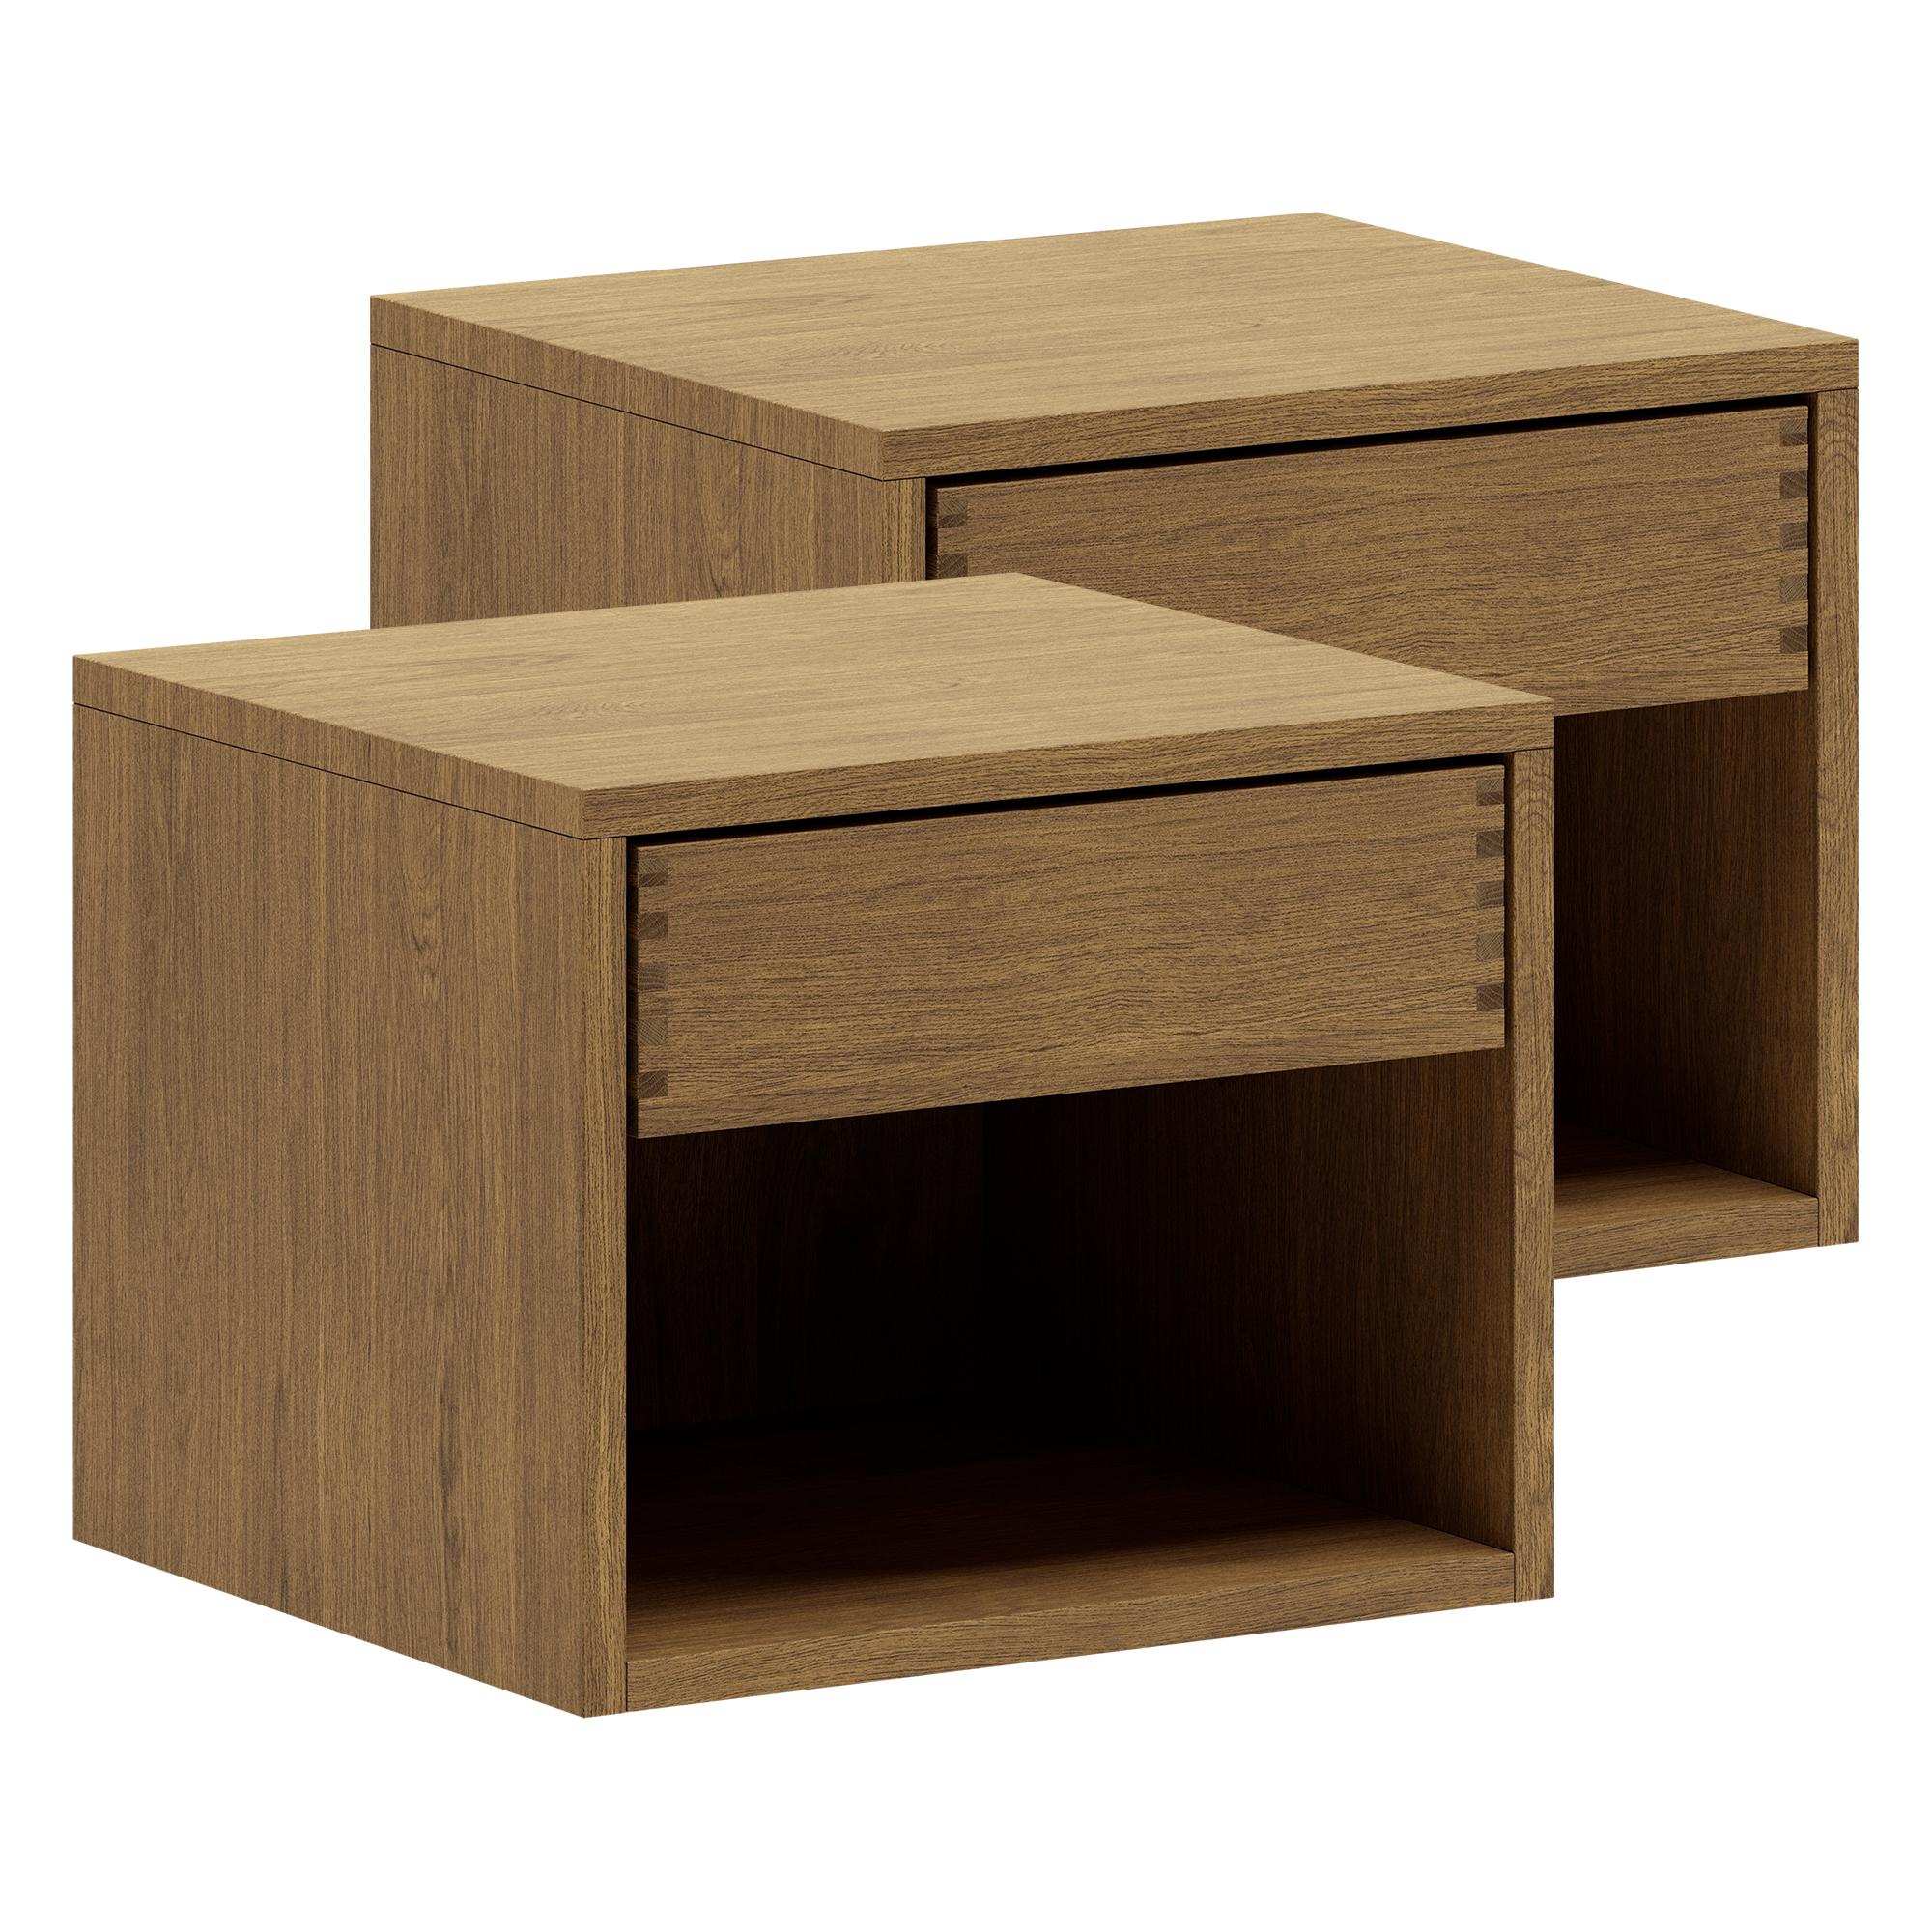 40 cm + 40 cm - Dunkel geöltes Just Wood Schreinertisch-Set mit 1 Schublade